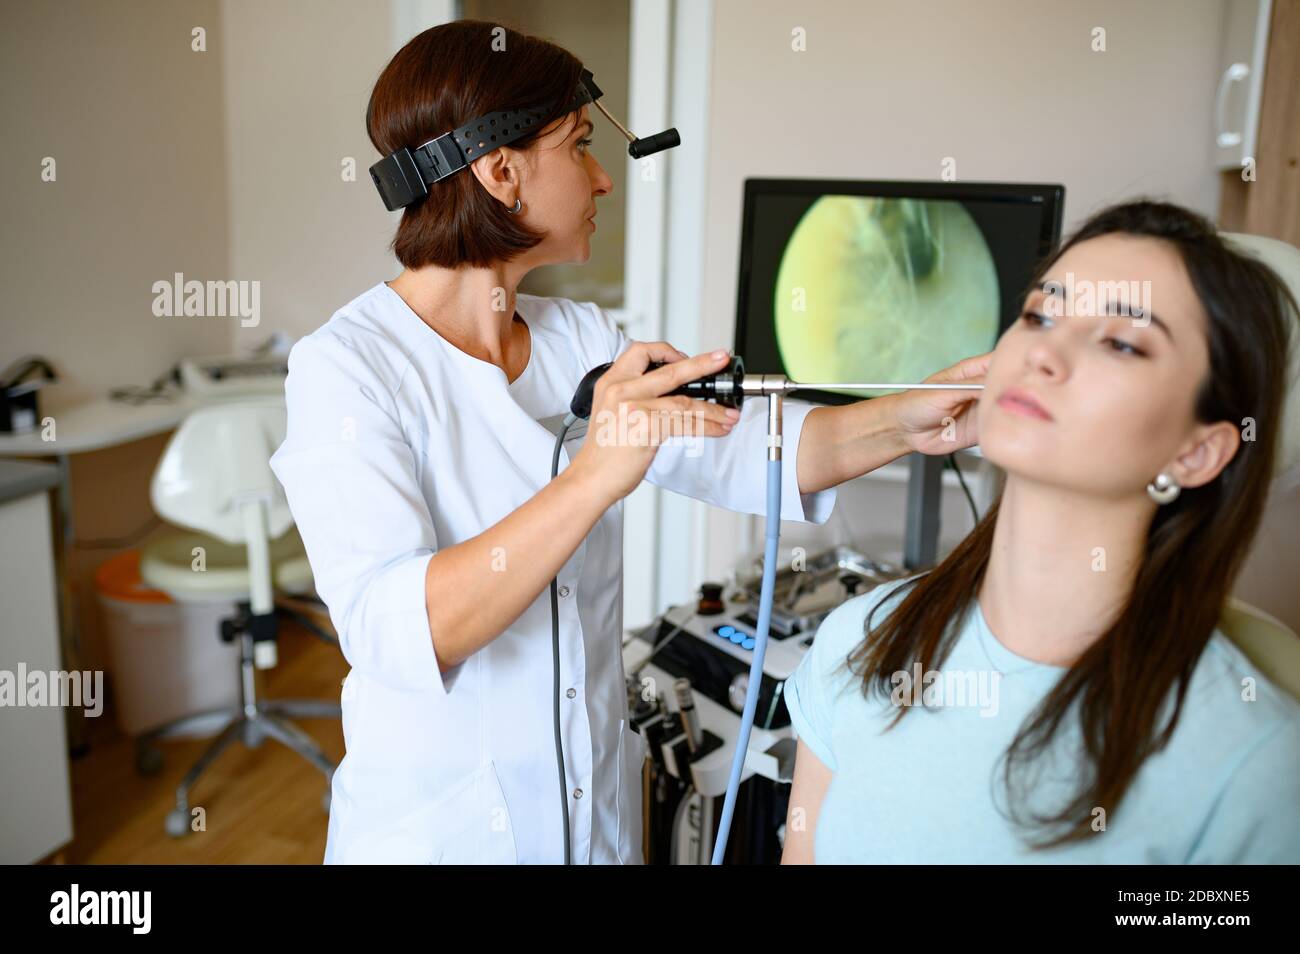 Joven mujer caucásica atractiva que recibe un examen médico del oído en una  clínica moderna. Profesional femenino que examina el oído del paciente,  usando un otoscopio, en el consultorio del médico Fotografía